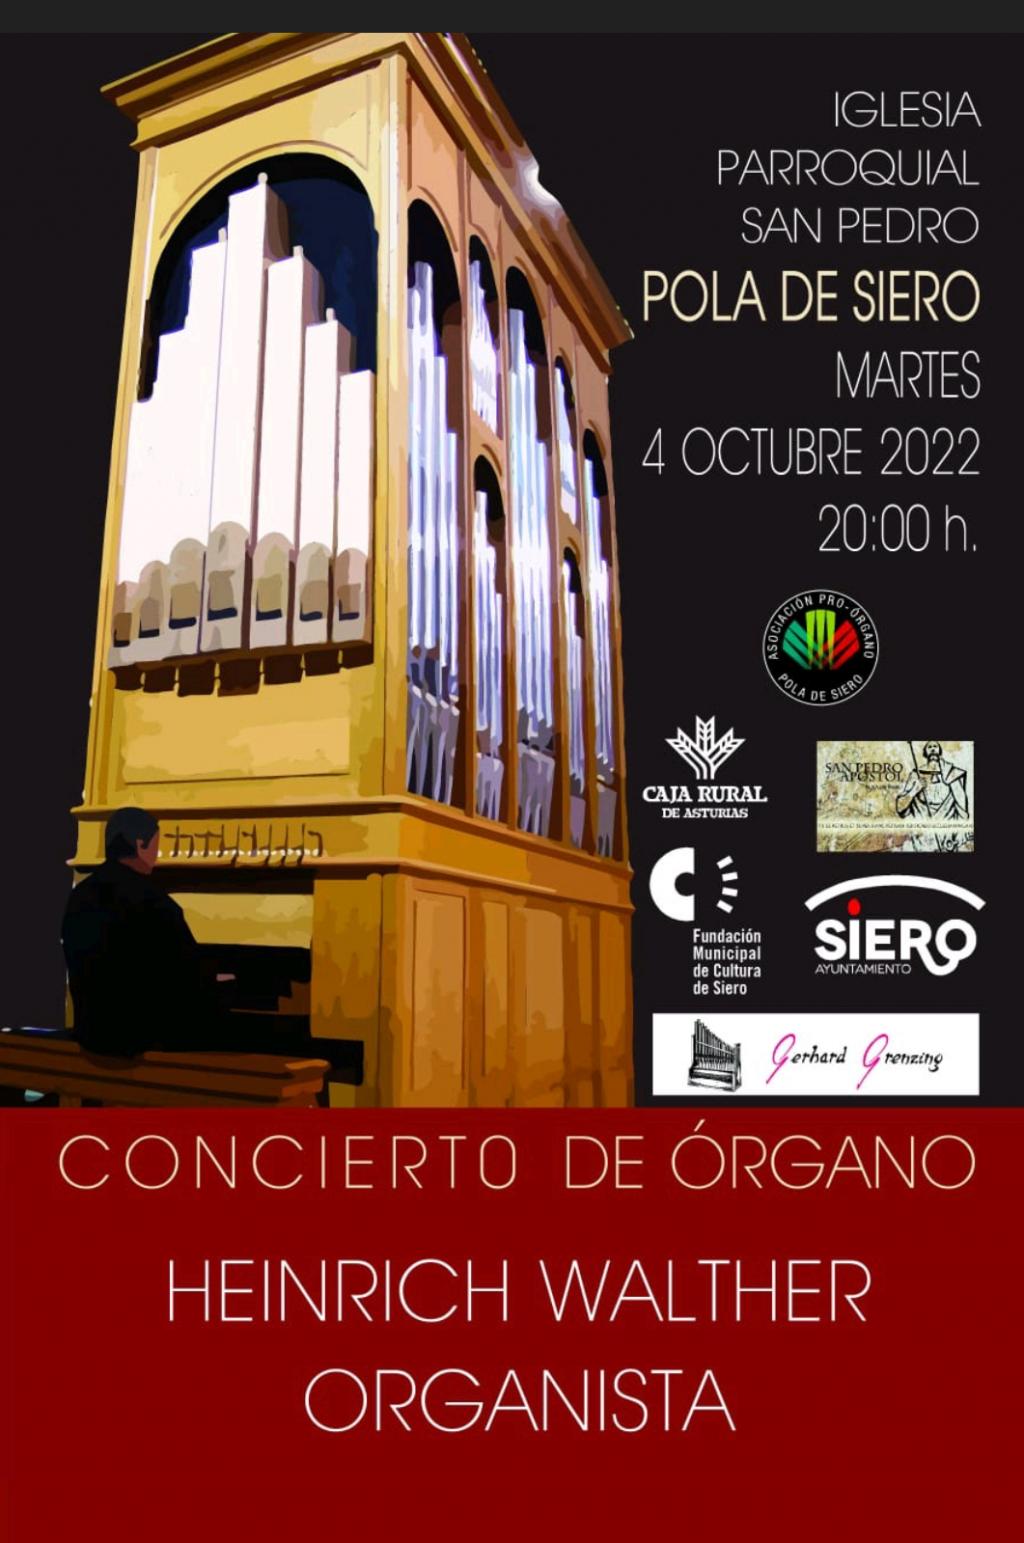 El Tapin - Concierto de Órgano en la iglesia de Pola Siero